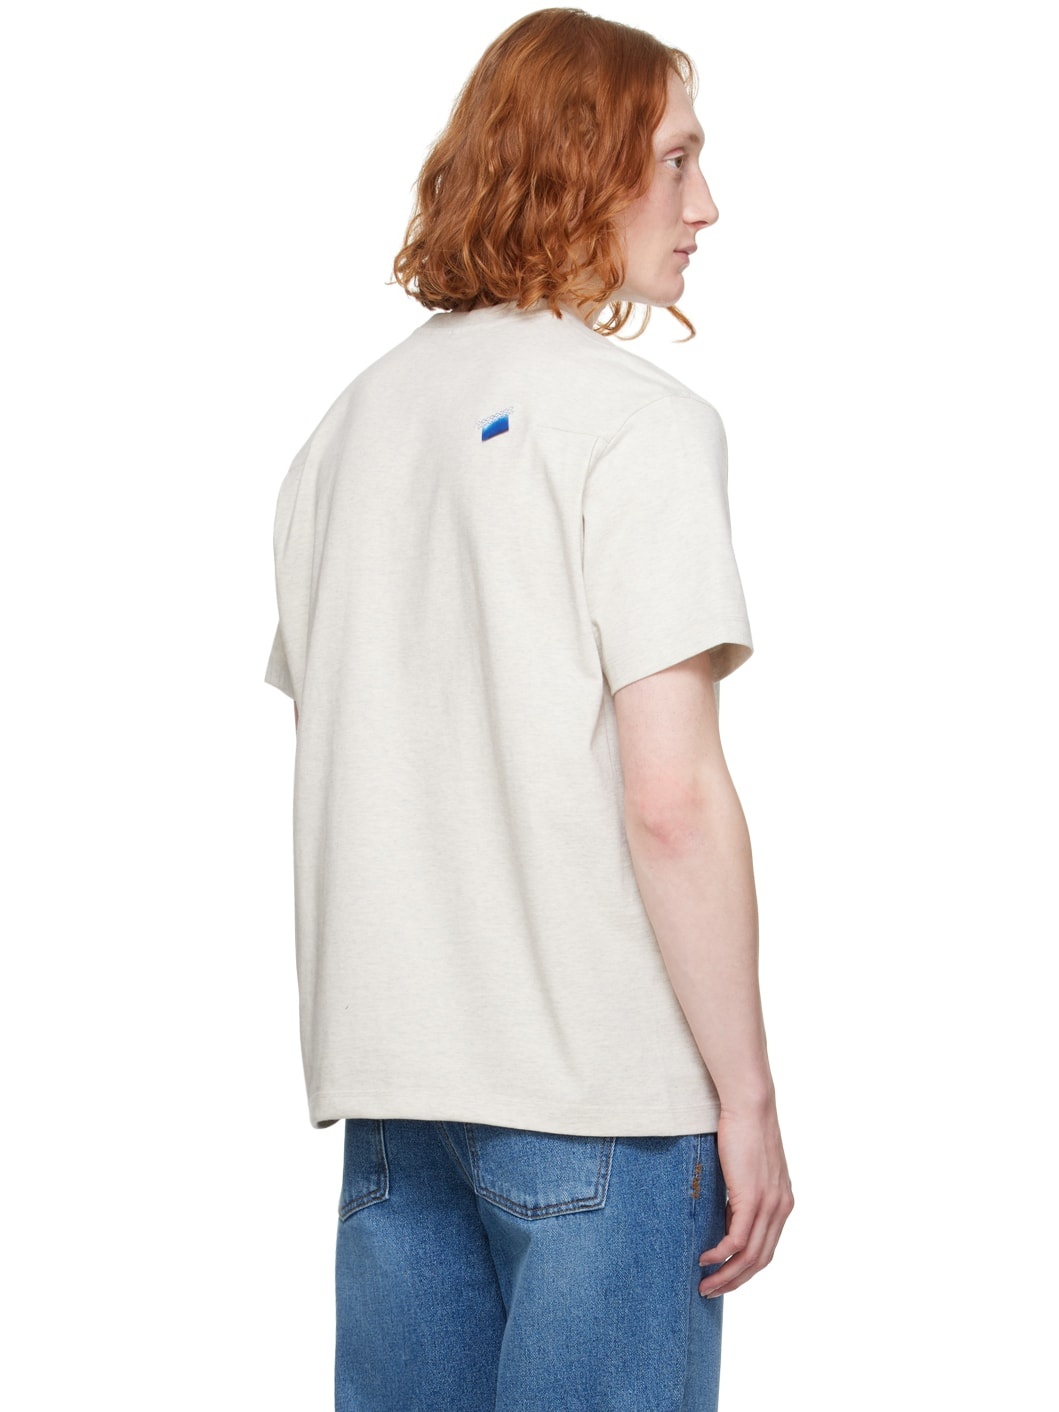 Beige Graphic T-Shirt - 3